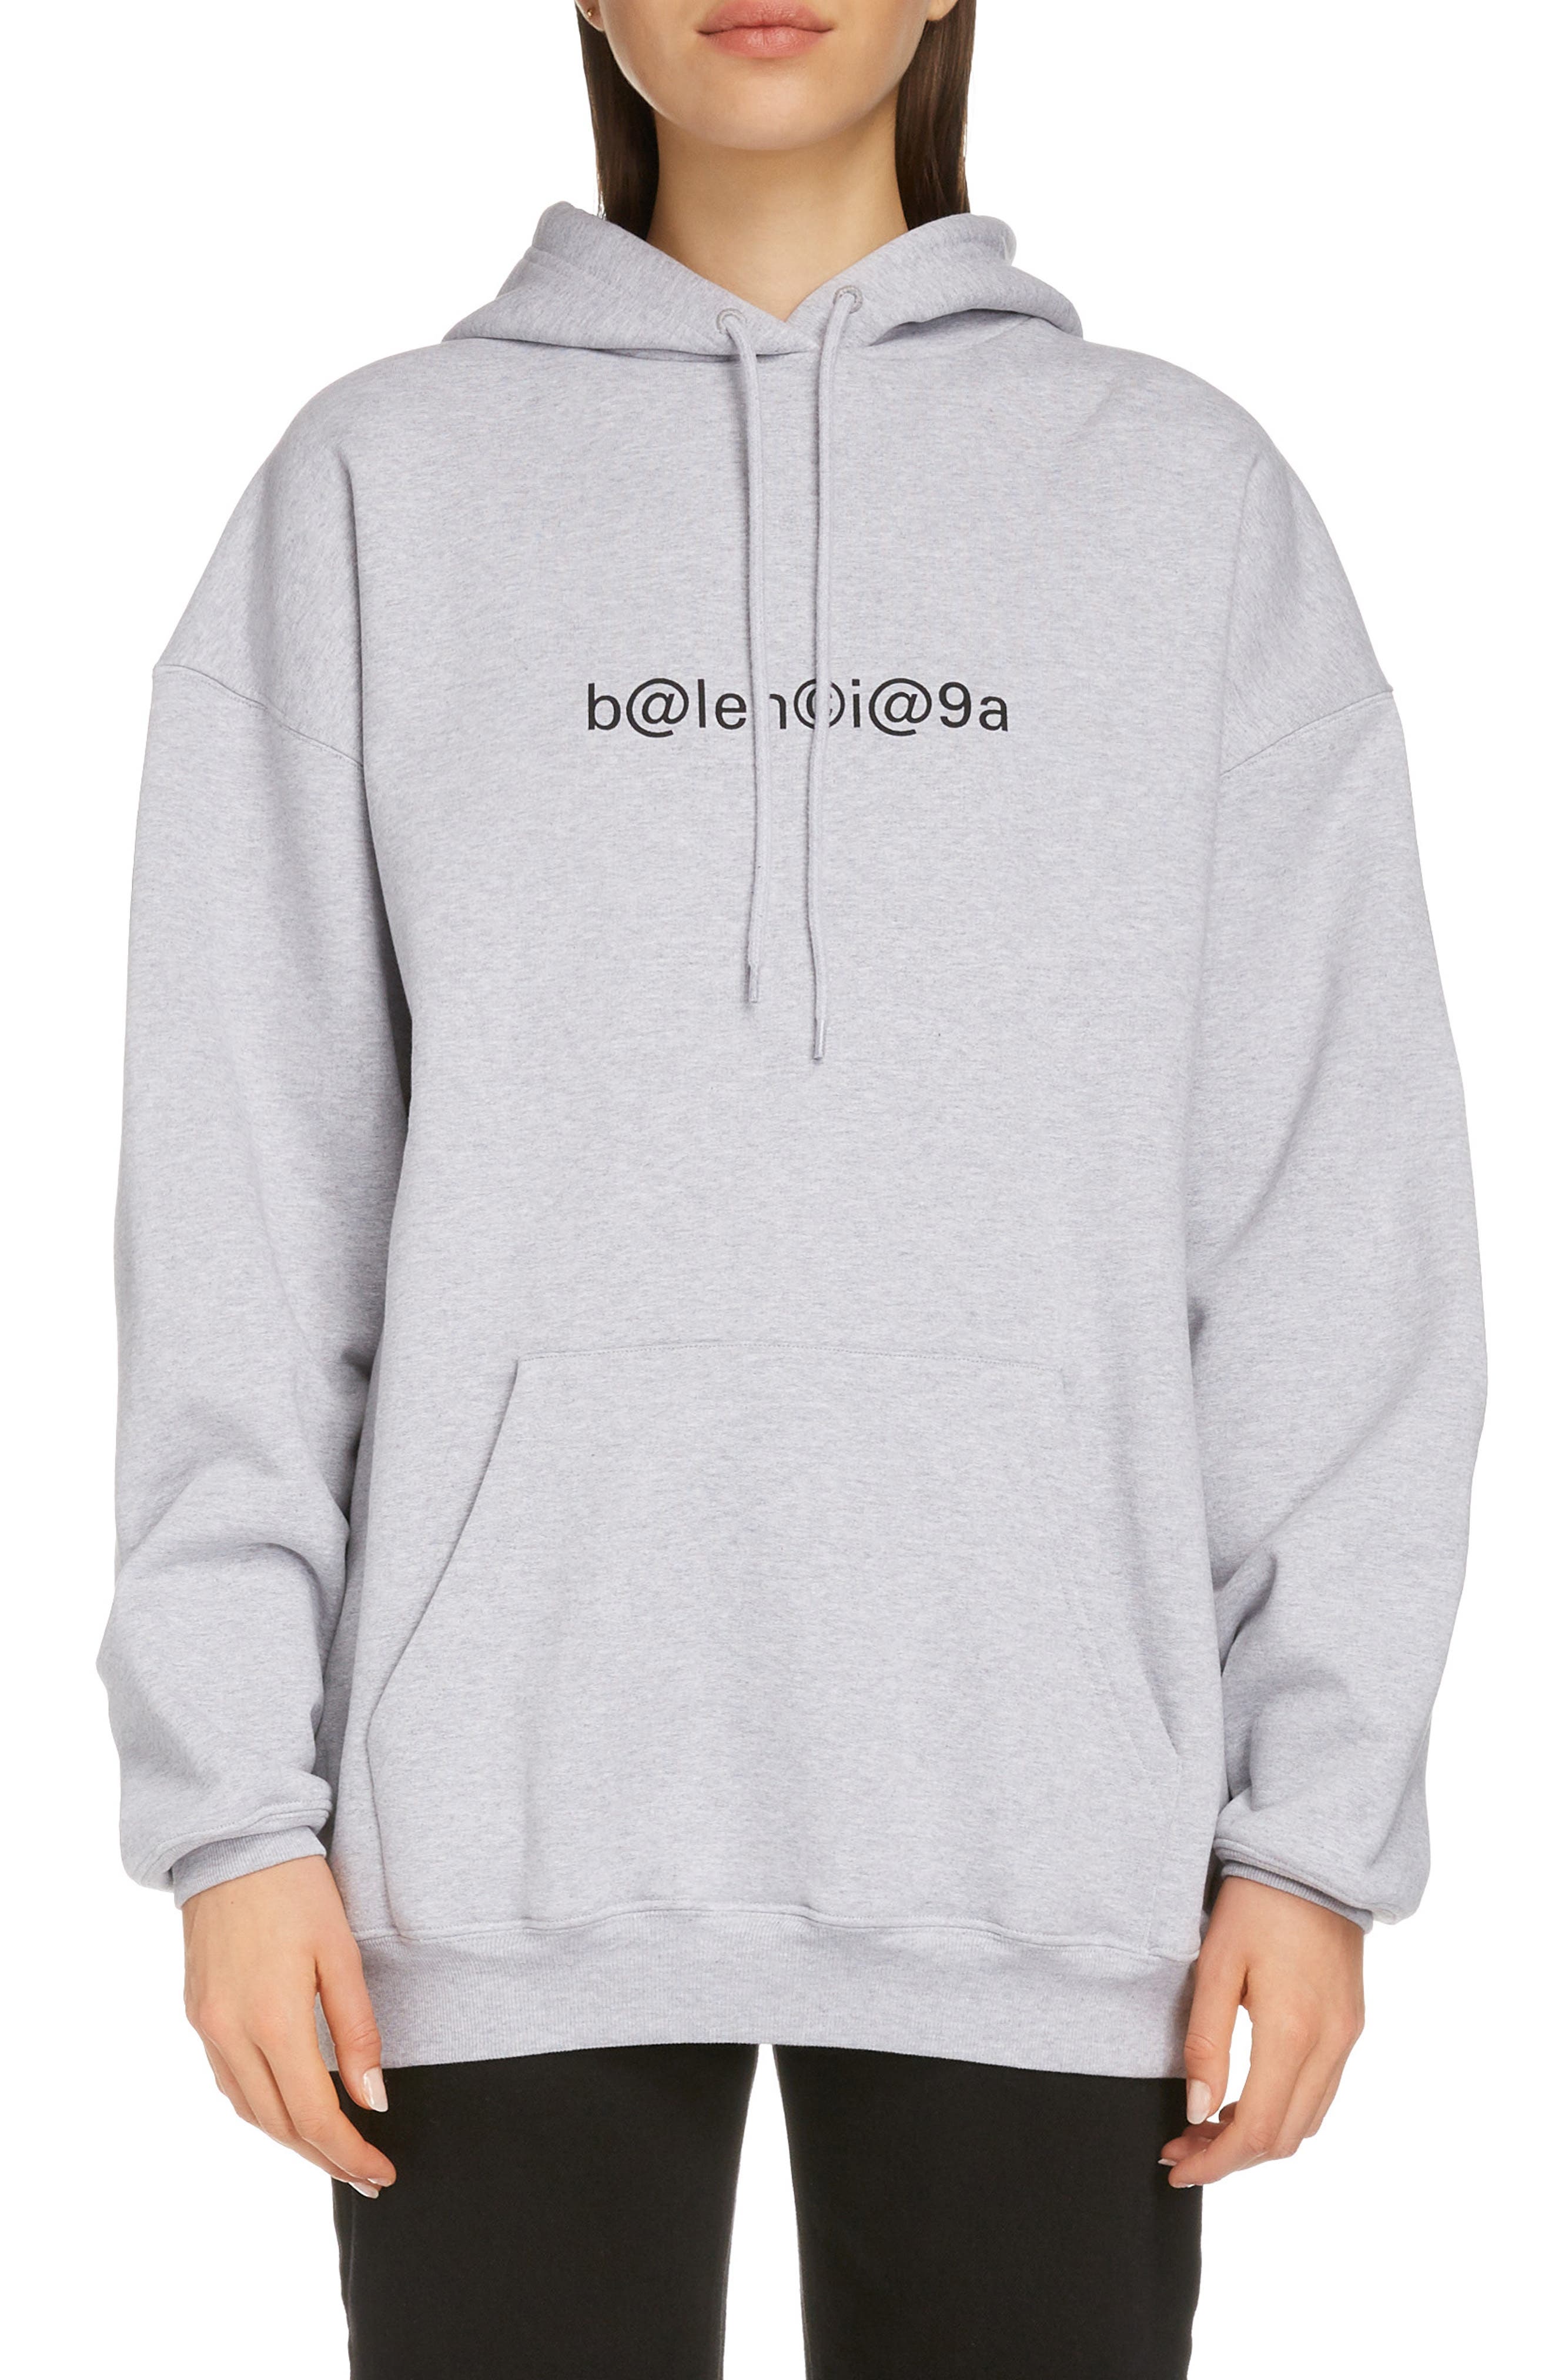 balenciaga hoodie womens 2015